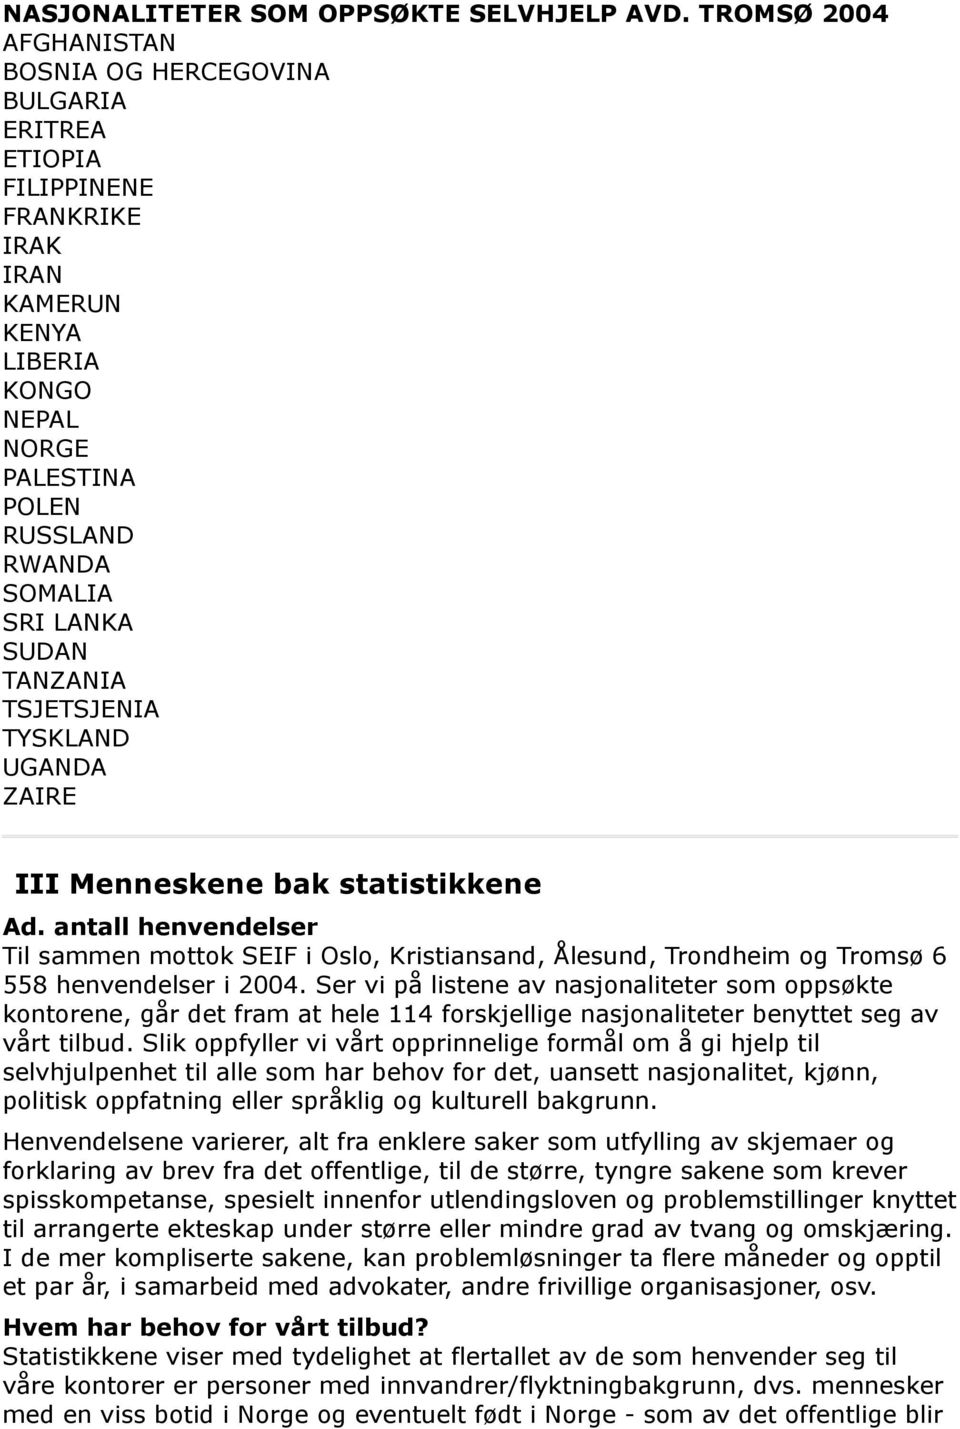 TANZANIA TSJETSJENIA TYSKLAND UGANDA ZAIRE III Menneskene bak statistikkene Ad. antall henvendelser Til sammen mottok SEIF i Oslo, Kristiansand, Ålesund, Trondheim og Tromsø 6 558 henvendelser i 2004.